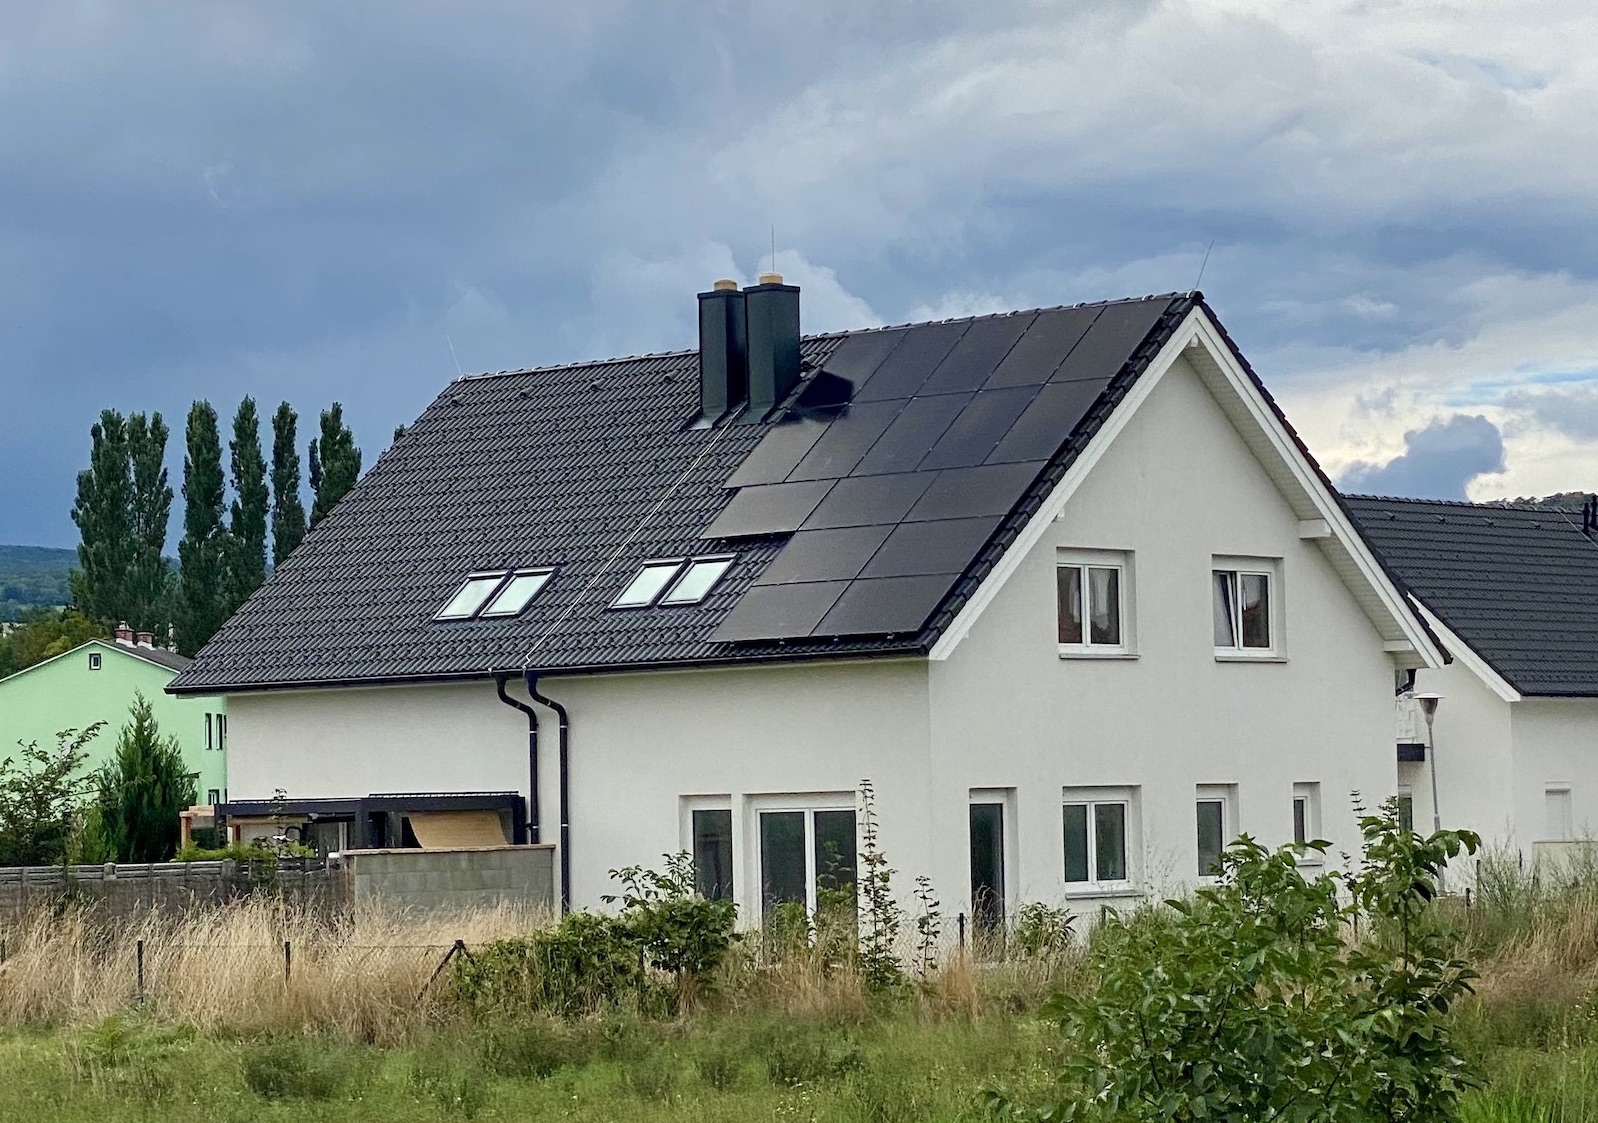 Photovoltaik-Anlage-PV-Anlage-Full-Black-Satteldach-Ziegeldach-Schraegdach-Solaranlage-SolarNow-Photovoltaik-GmbH-3